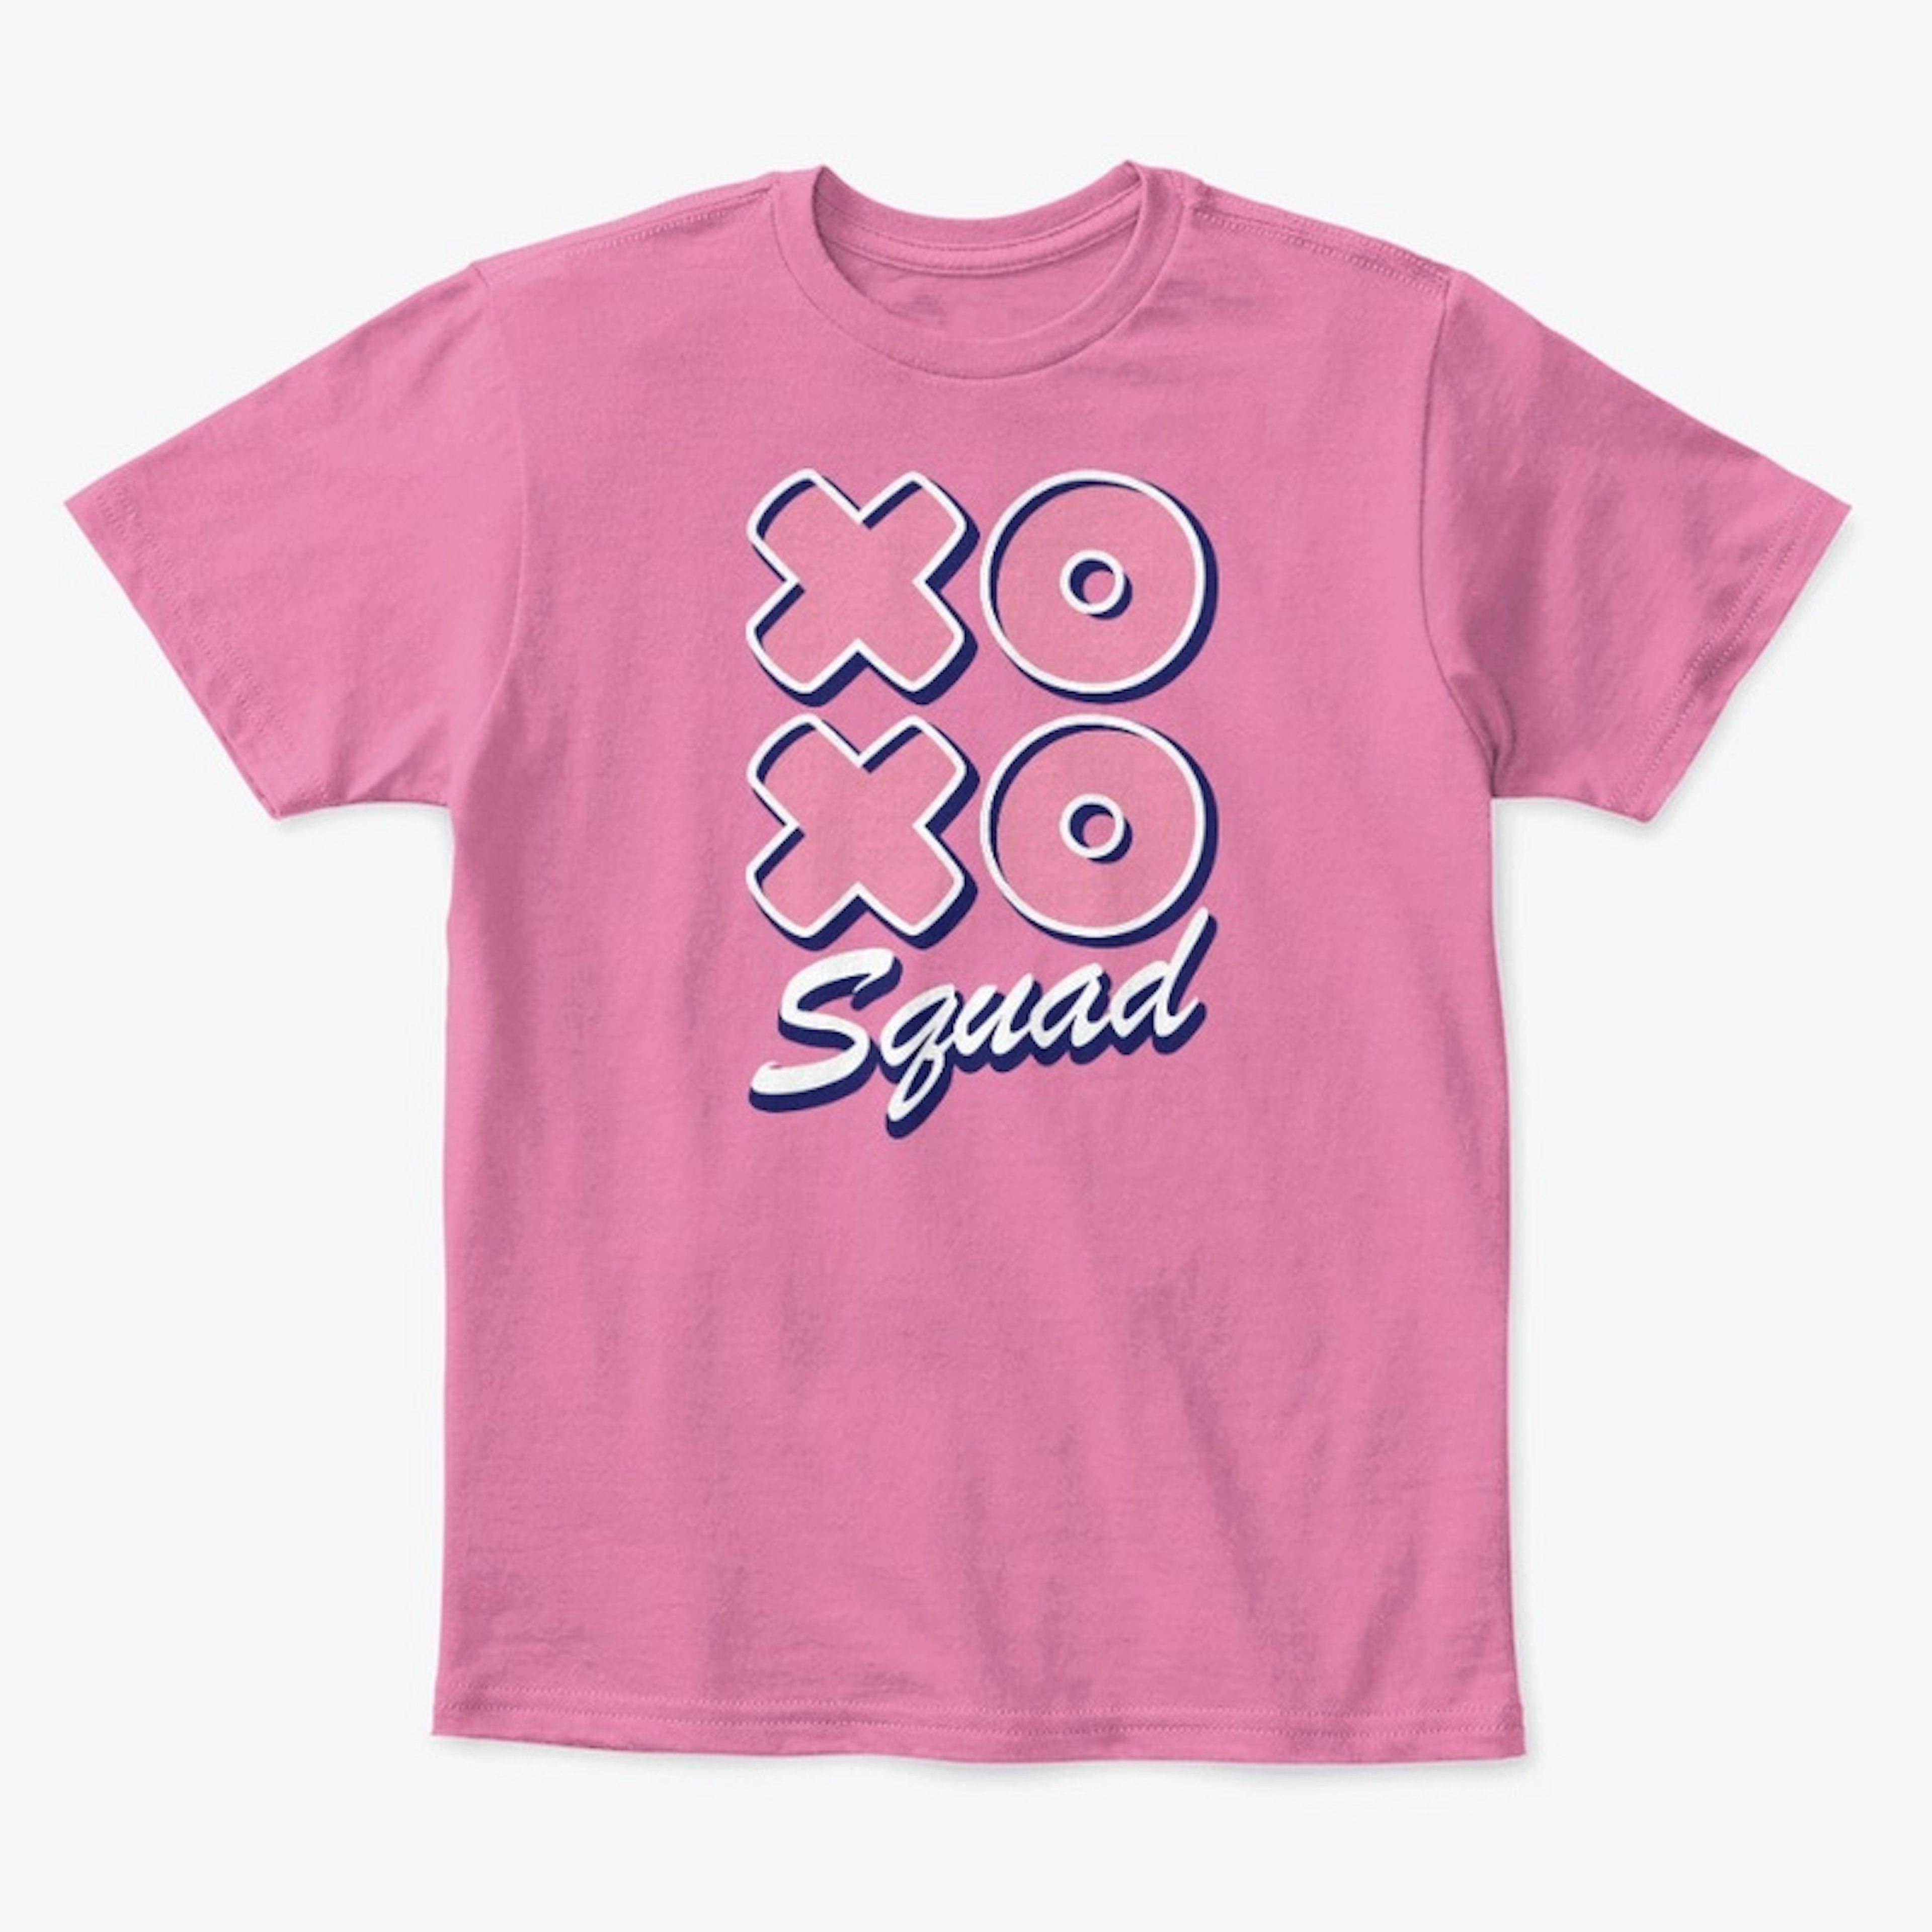 XOXO Squad Pink